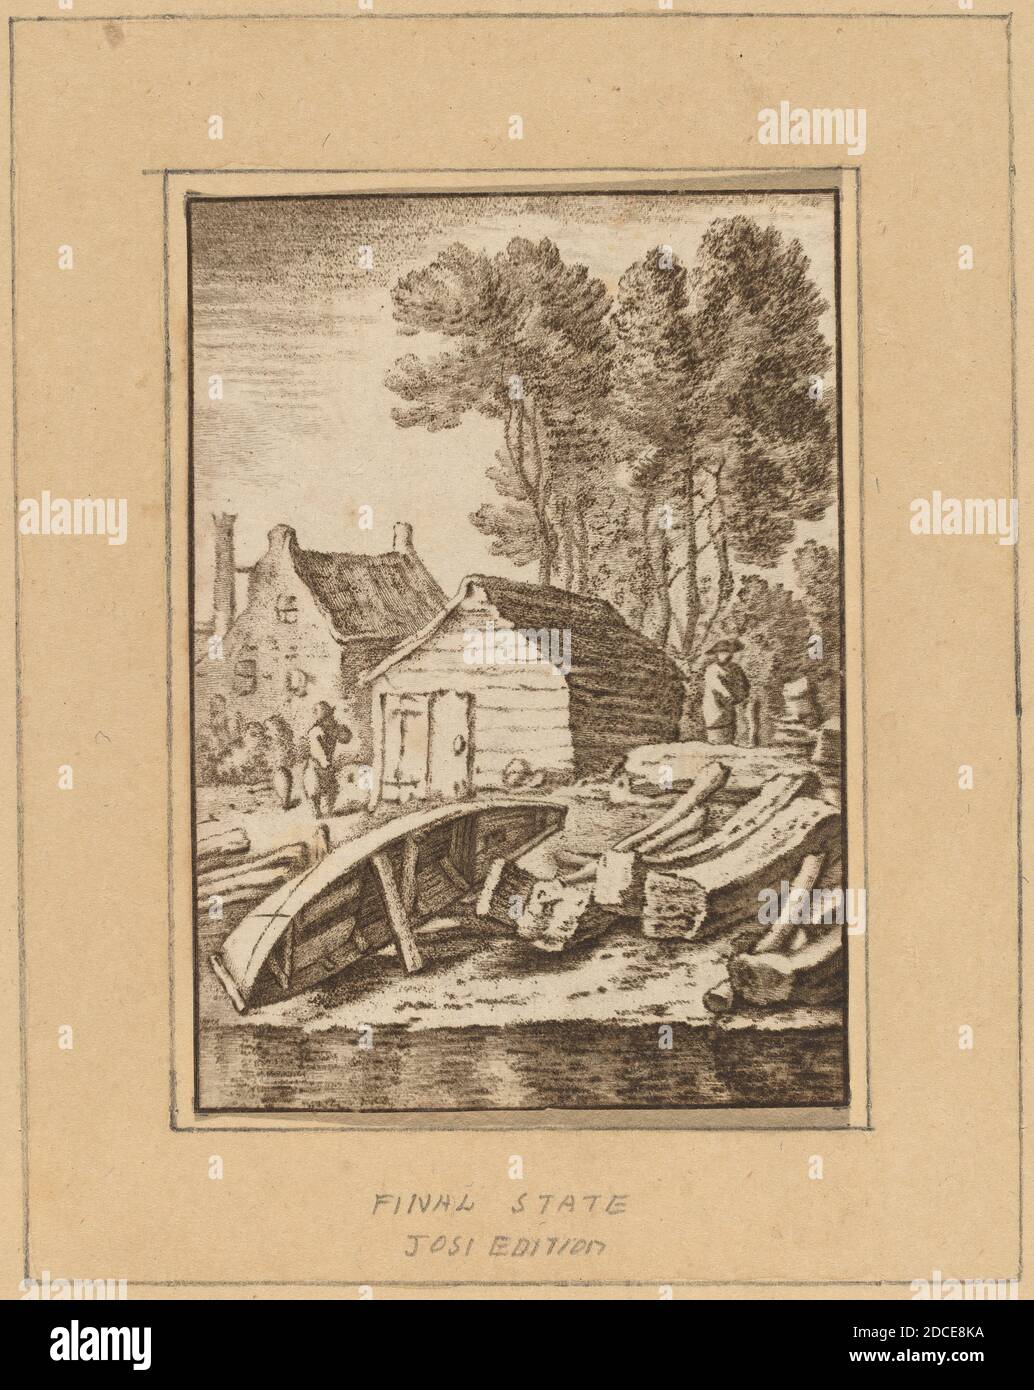 Cornelis Ploos van Amstel, (artiste), Néerlandais, 1726 - 1798, Herman  Saftleven, (artiste après), Néerlandais, 1609 - 1685, Shipyard, 1761,  publié en 1765, craie avec des hachures gravées imprimées à l'encre noire  sur